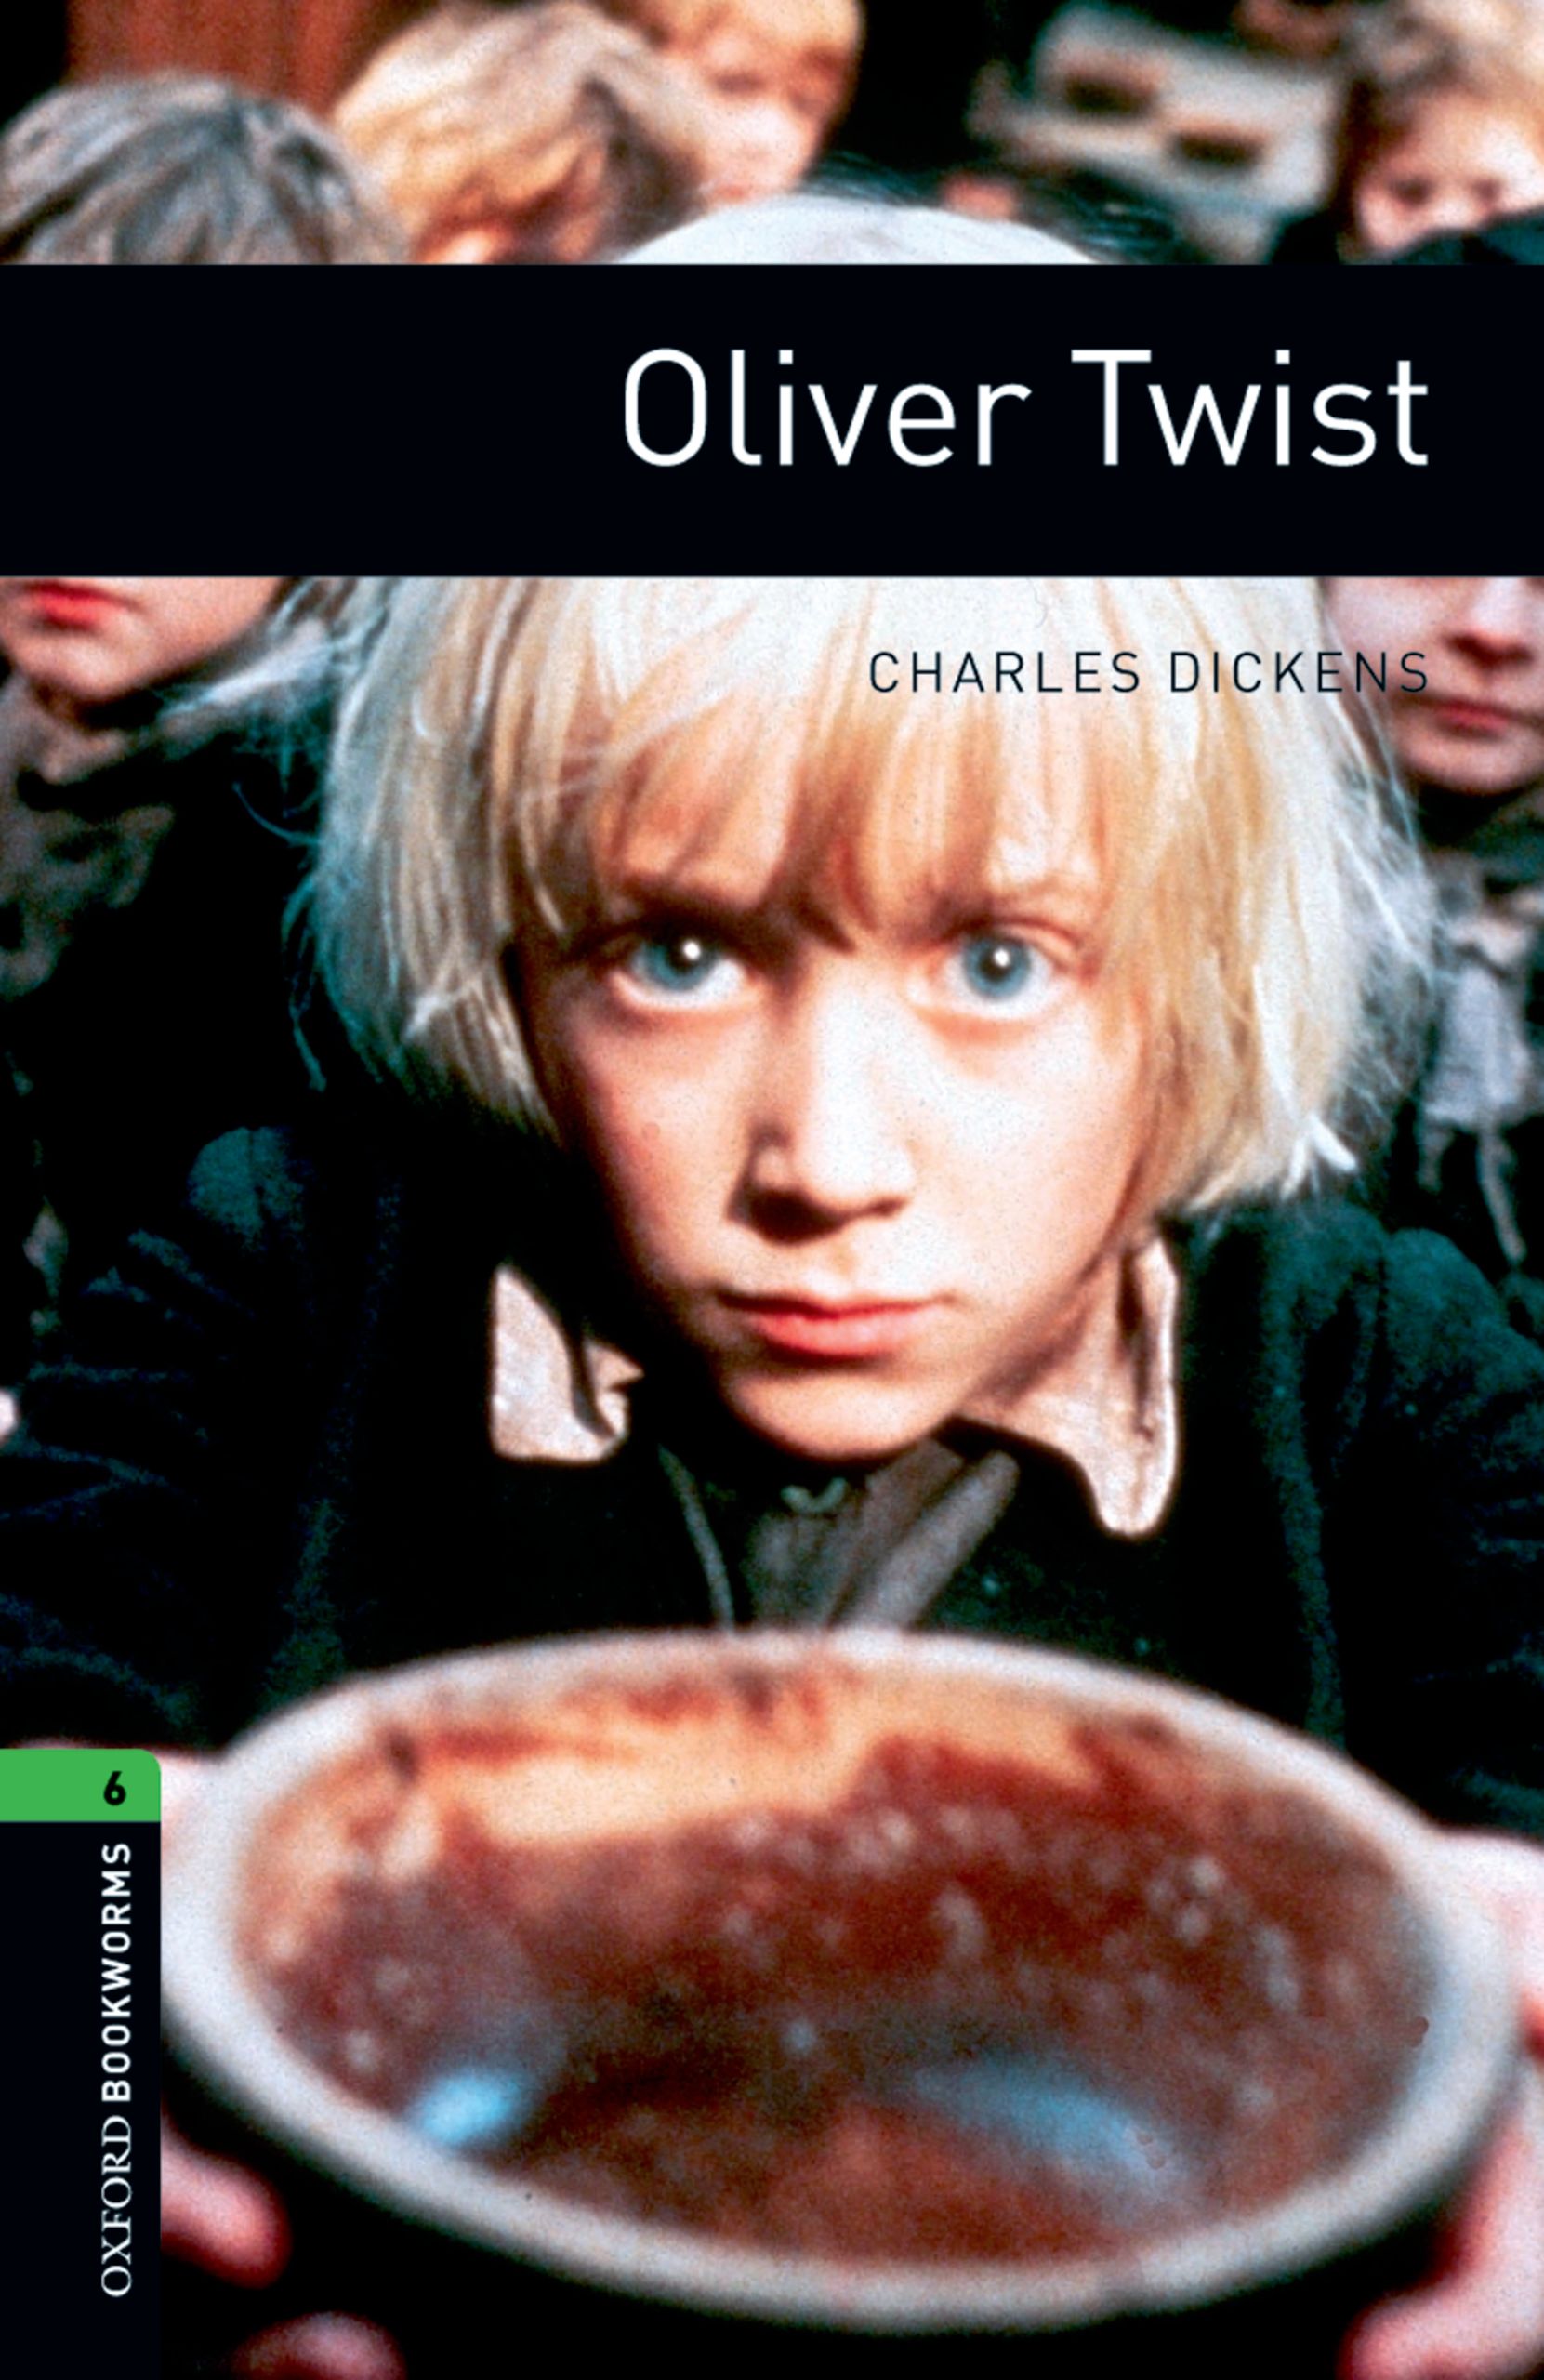 Книга Oliver Twist из серии , созданная Charles Dickens, может относится к жанру Иностранные языки, Иностранные языки, Зарубежная образовательная литература. Стоимость электронной книги Oliver Twist с идентификатором 23573552 составляет 405.87 руб.